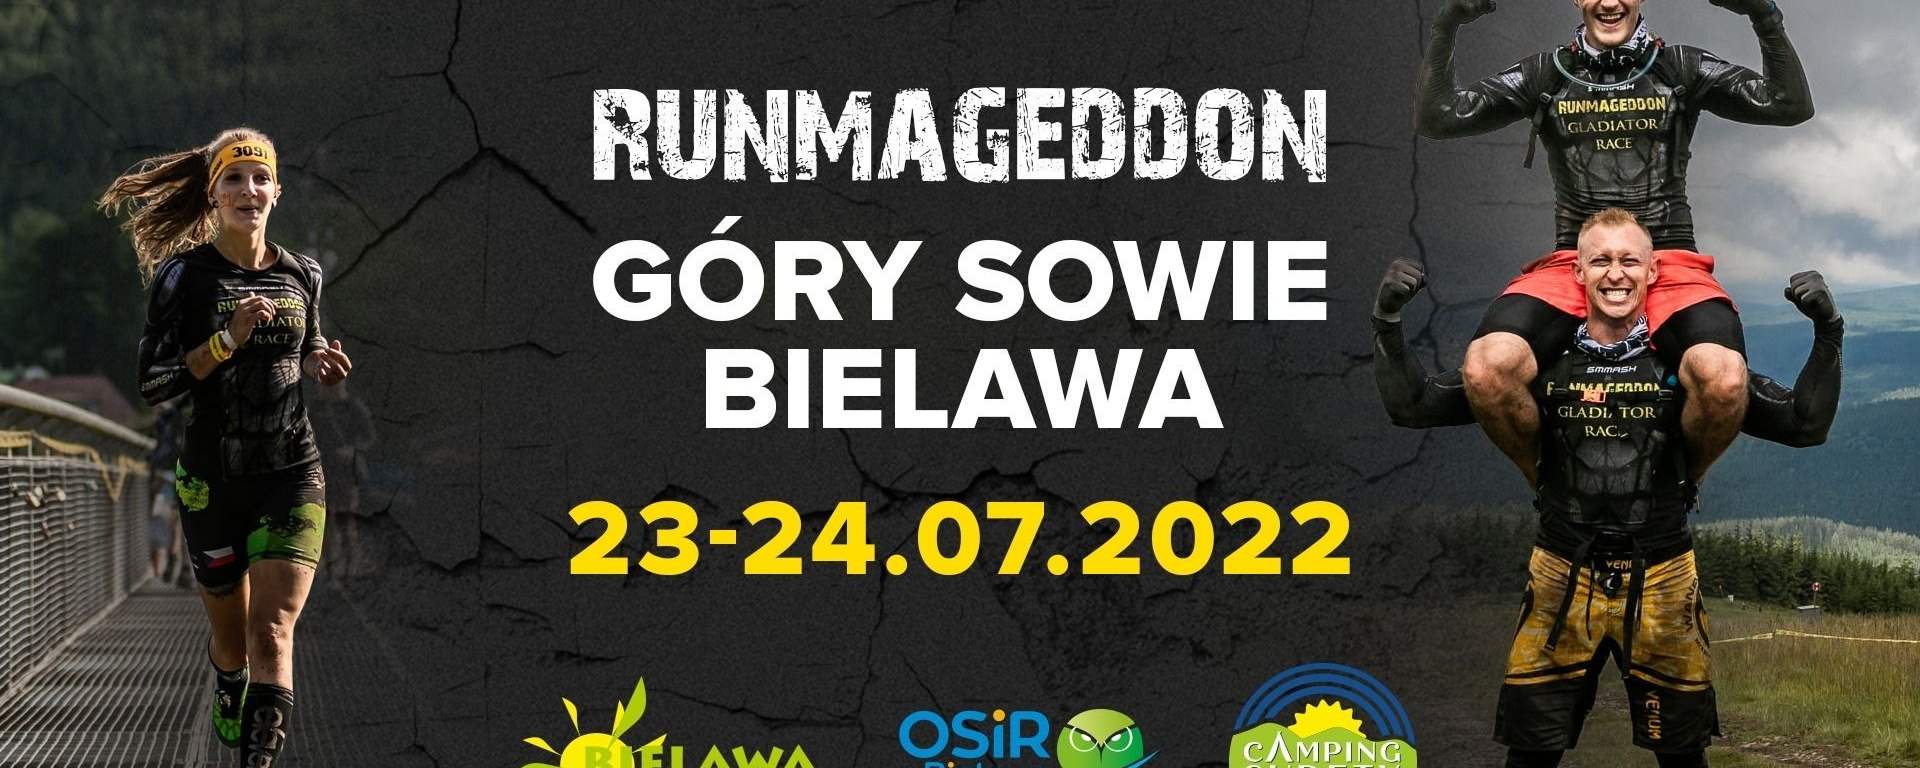 Runmageddon 2022 w Bielawie w Górach Sowich